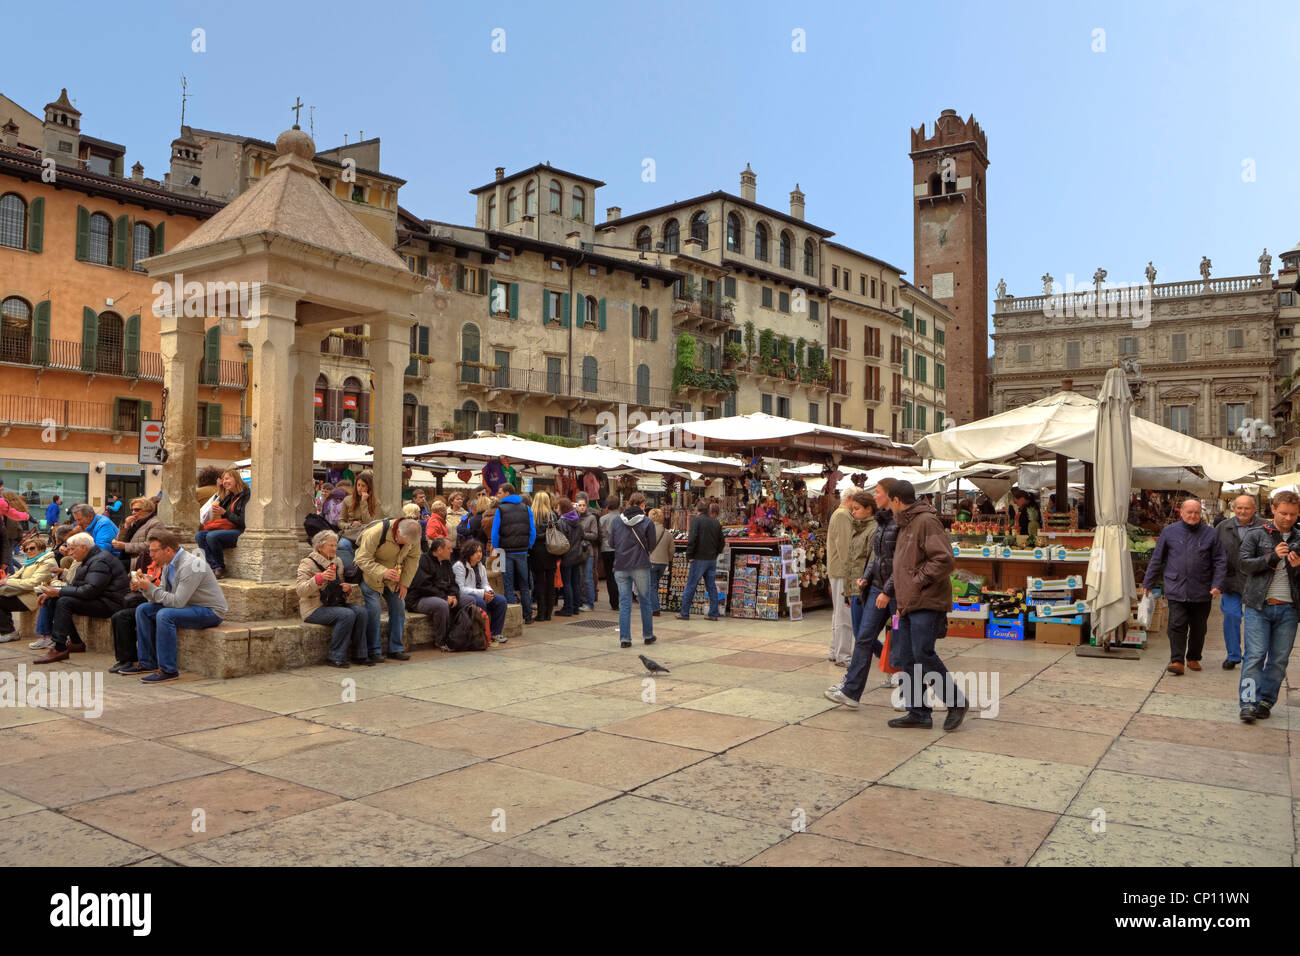 Piazza Erbe, Verona, Veneto, Italy Stock Photo